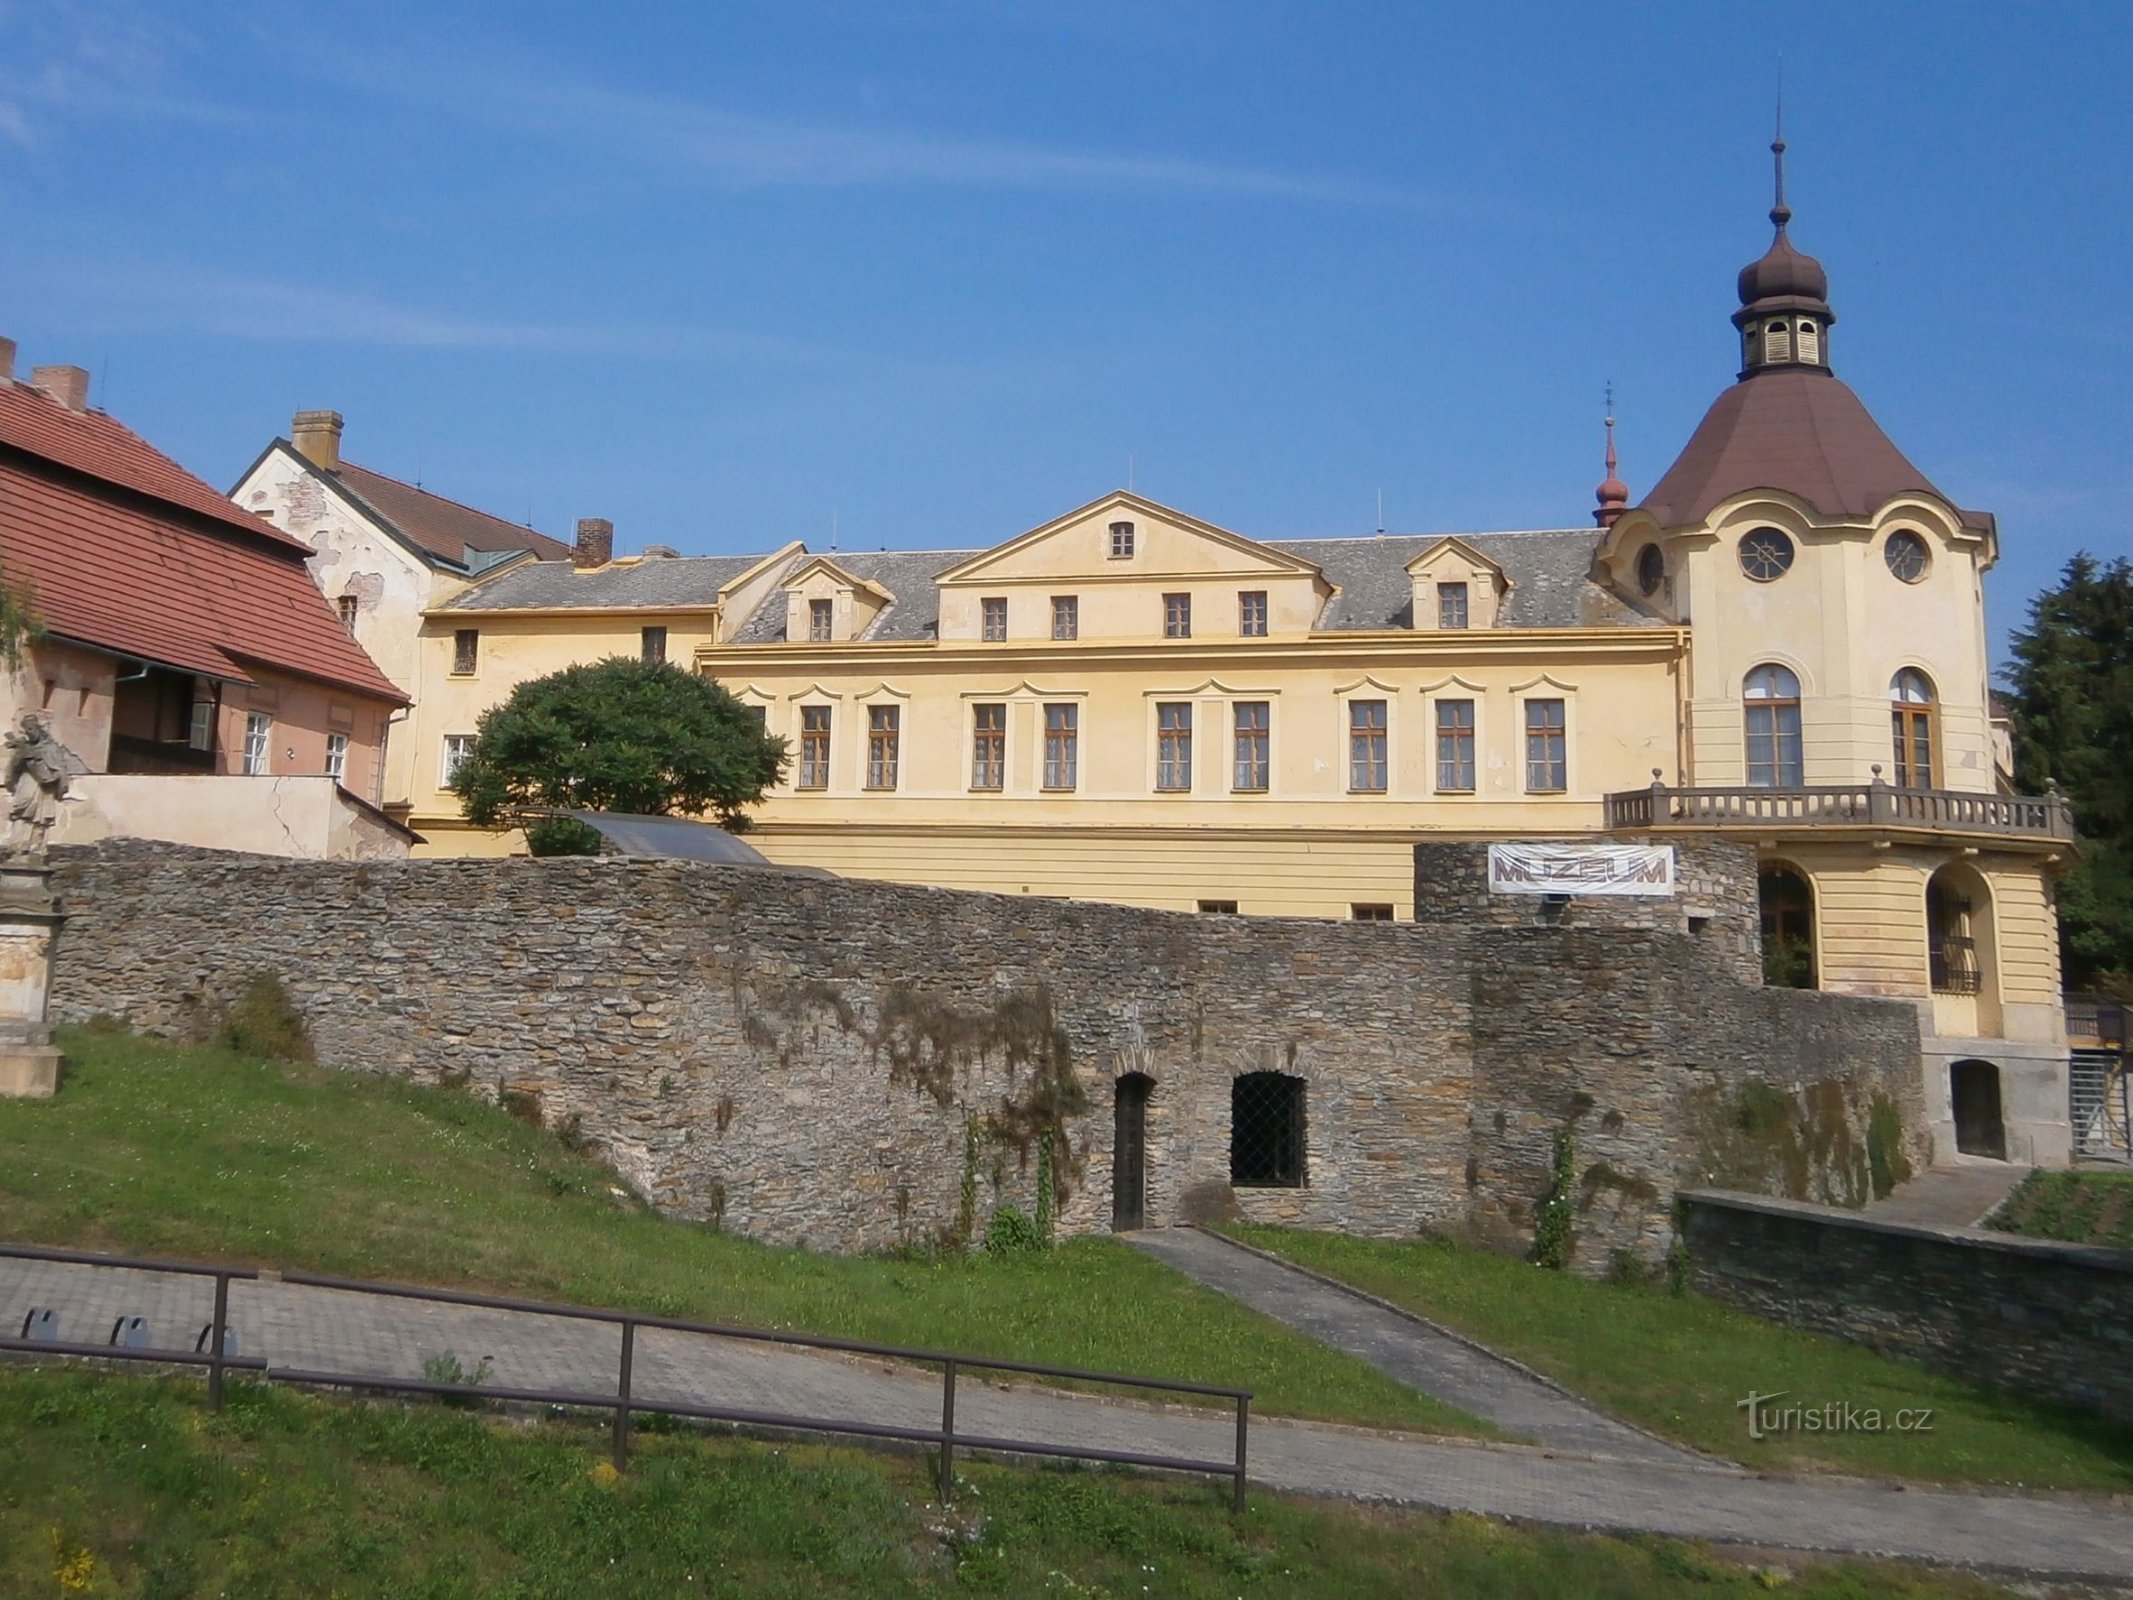 Steidler-värdshusets uthus omvandlas till ett kloster (Česká Skalice, 5.7.2017 juli XNUMX)